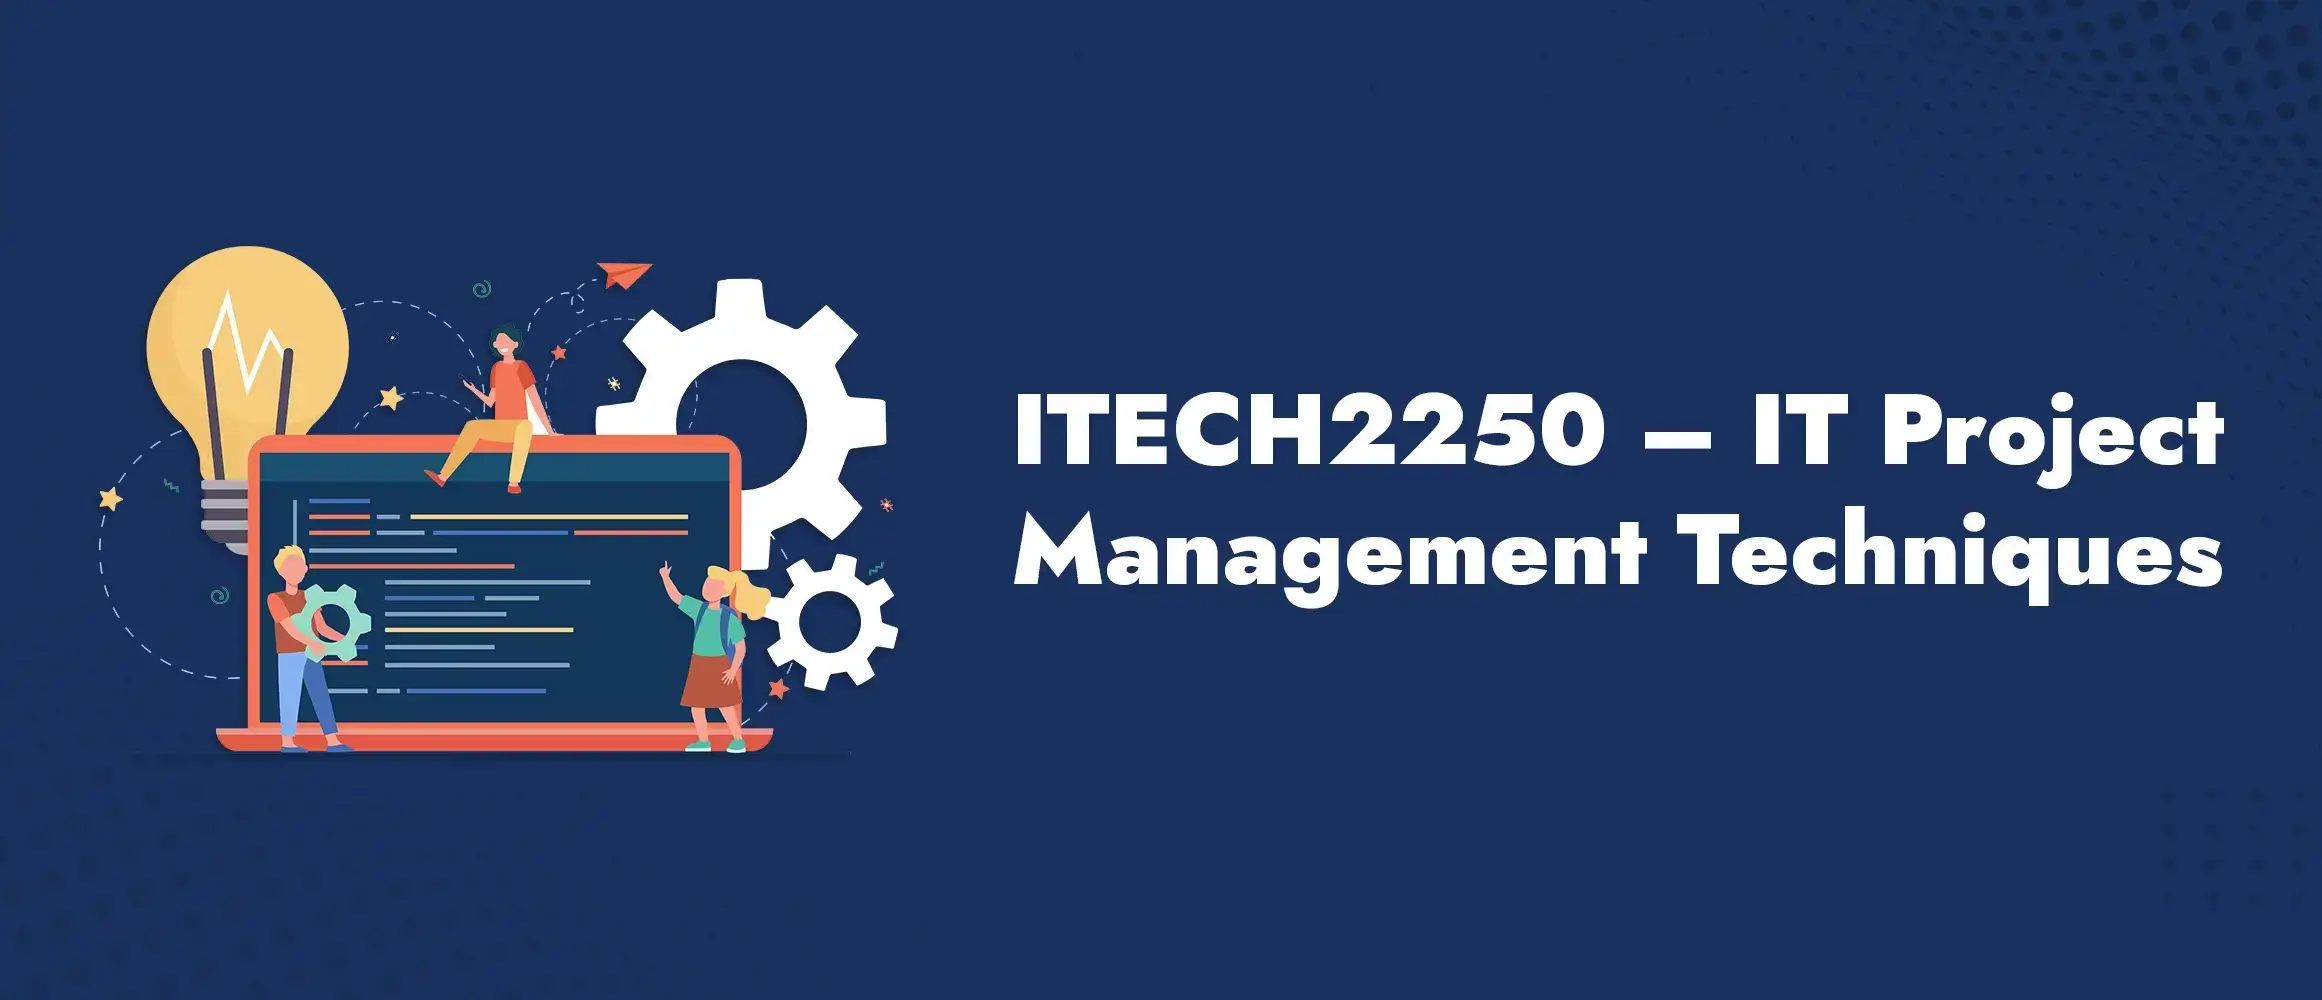 ITECH2250 IT Project Management Techniques